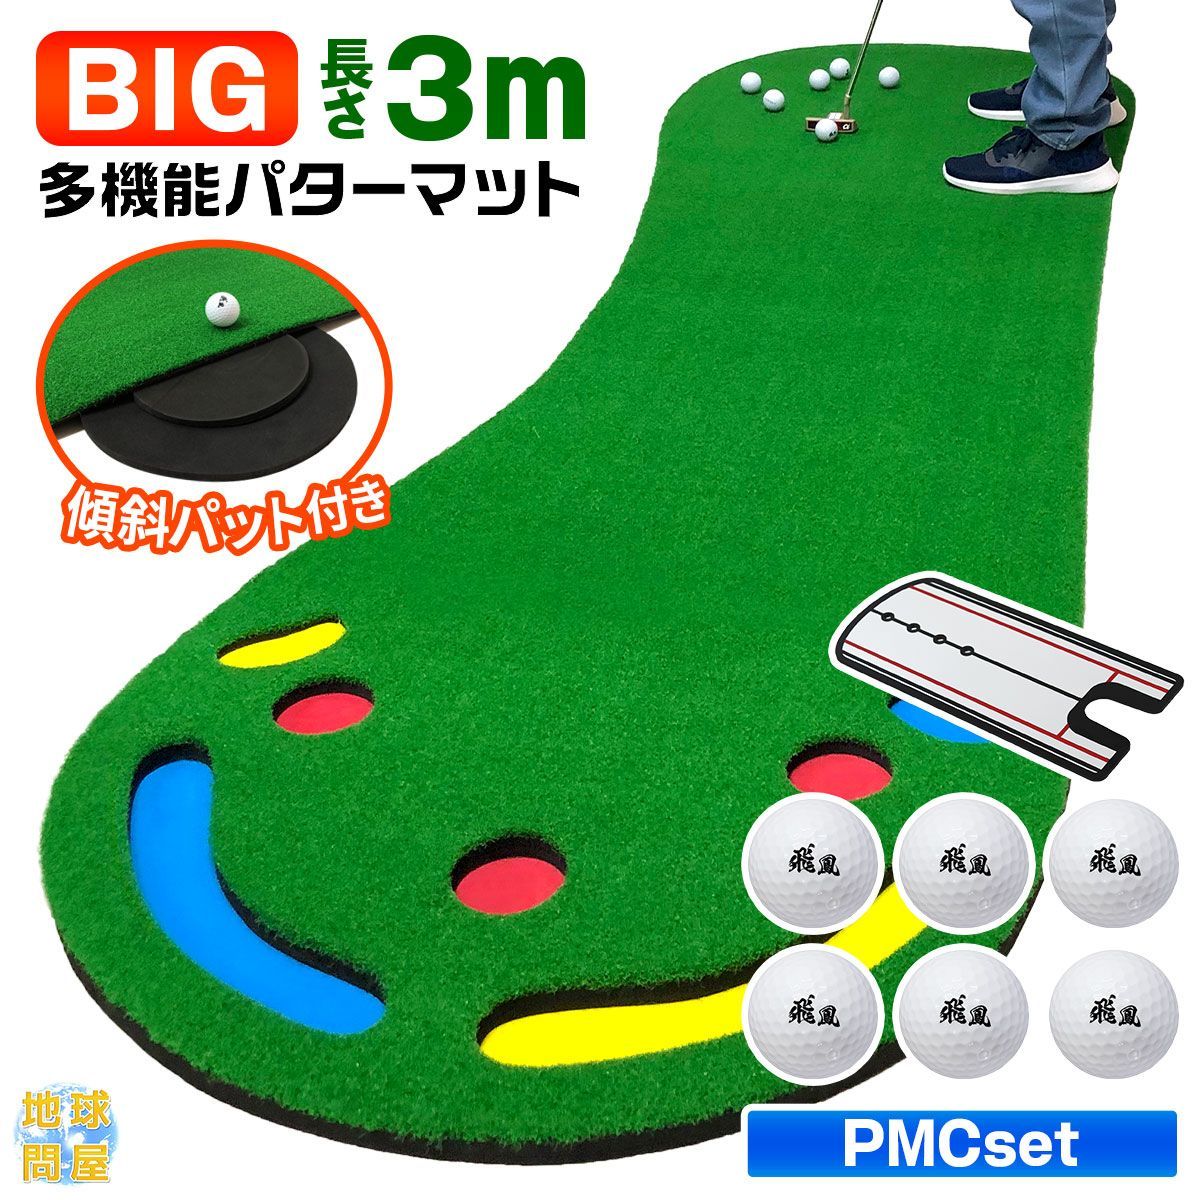 GolfStyle BIG パターマット 3M パター 練習 マット 大型 ゴルフマット ...